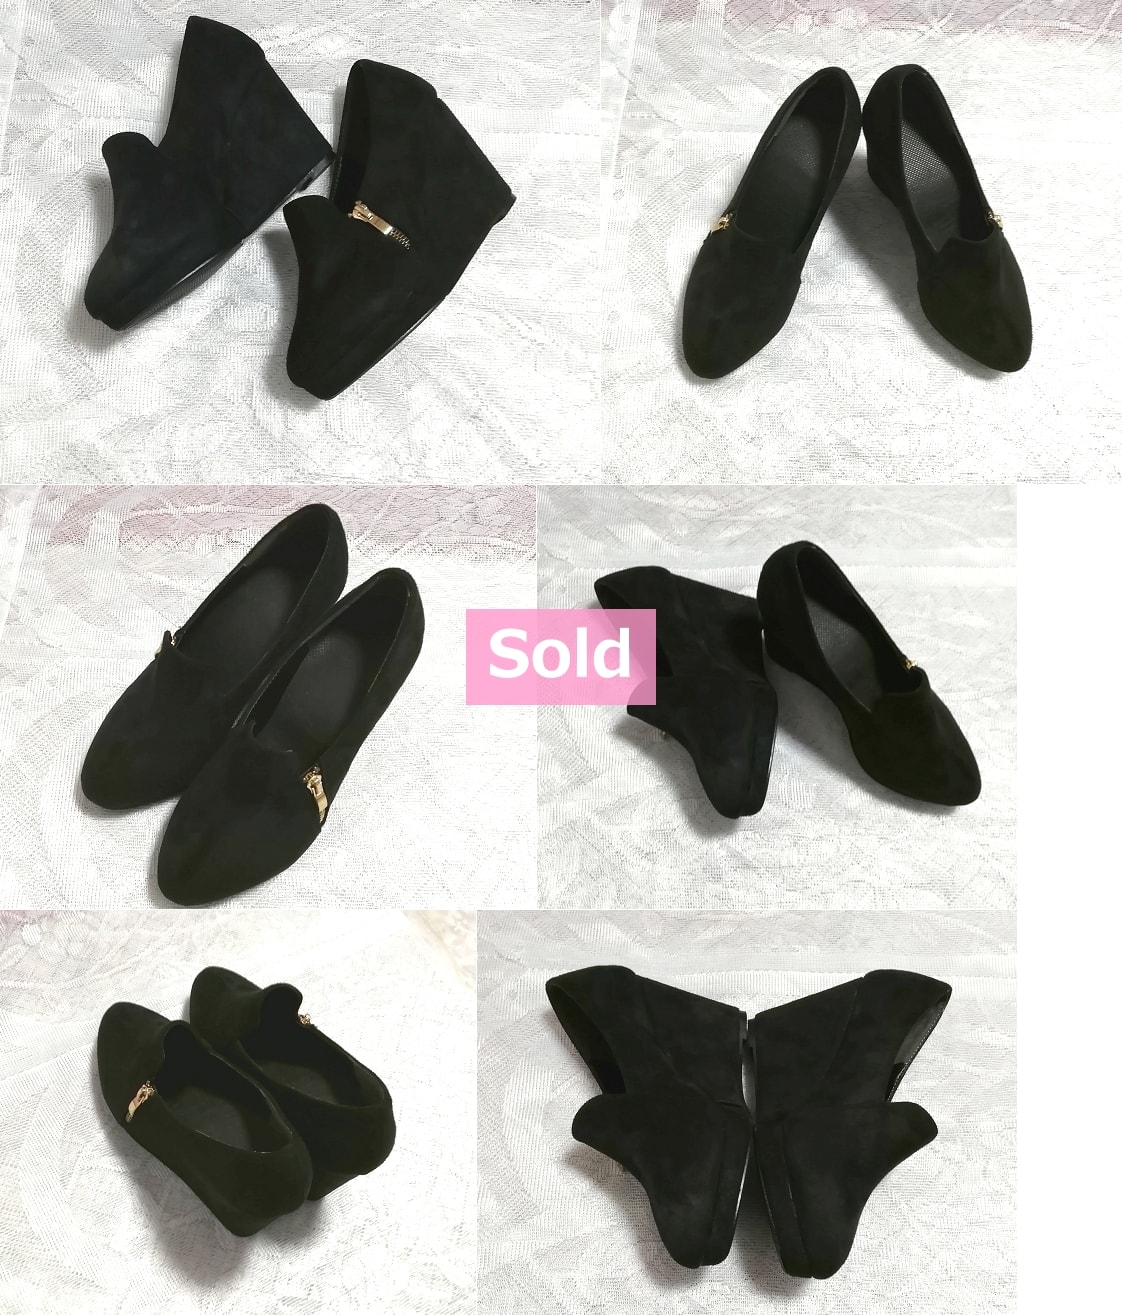 Noir Noir 10 cm / Chaussures pour femmes simples / Sandales / Talons hauts / Chaussures de chambre Noir 3, 93 en bas épais Chaussures simples pour femmes sandale